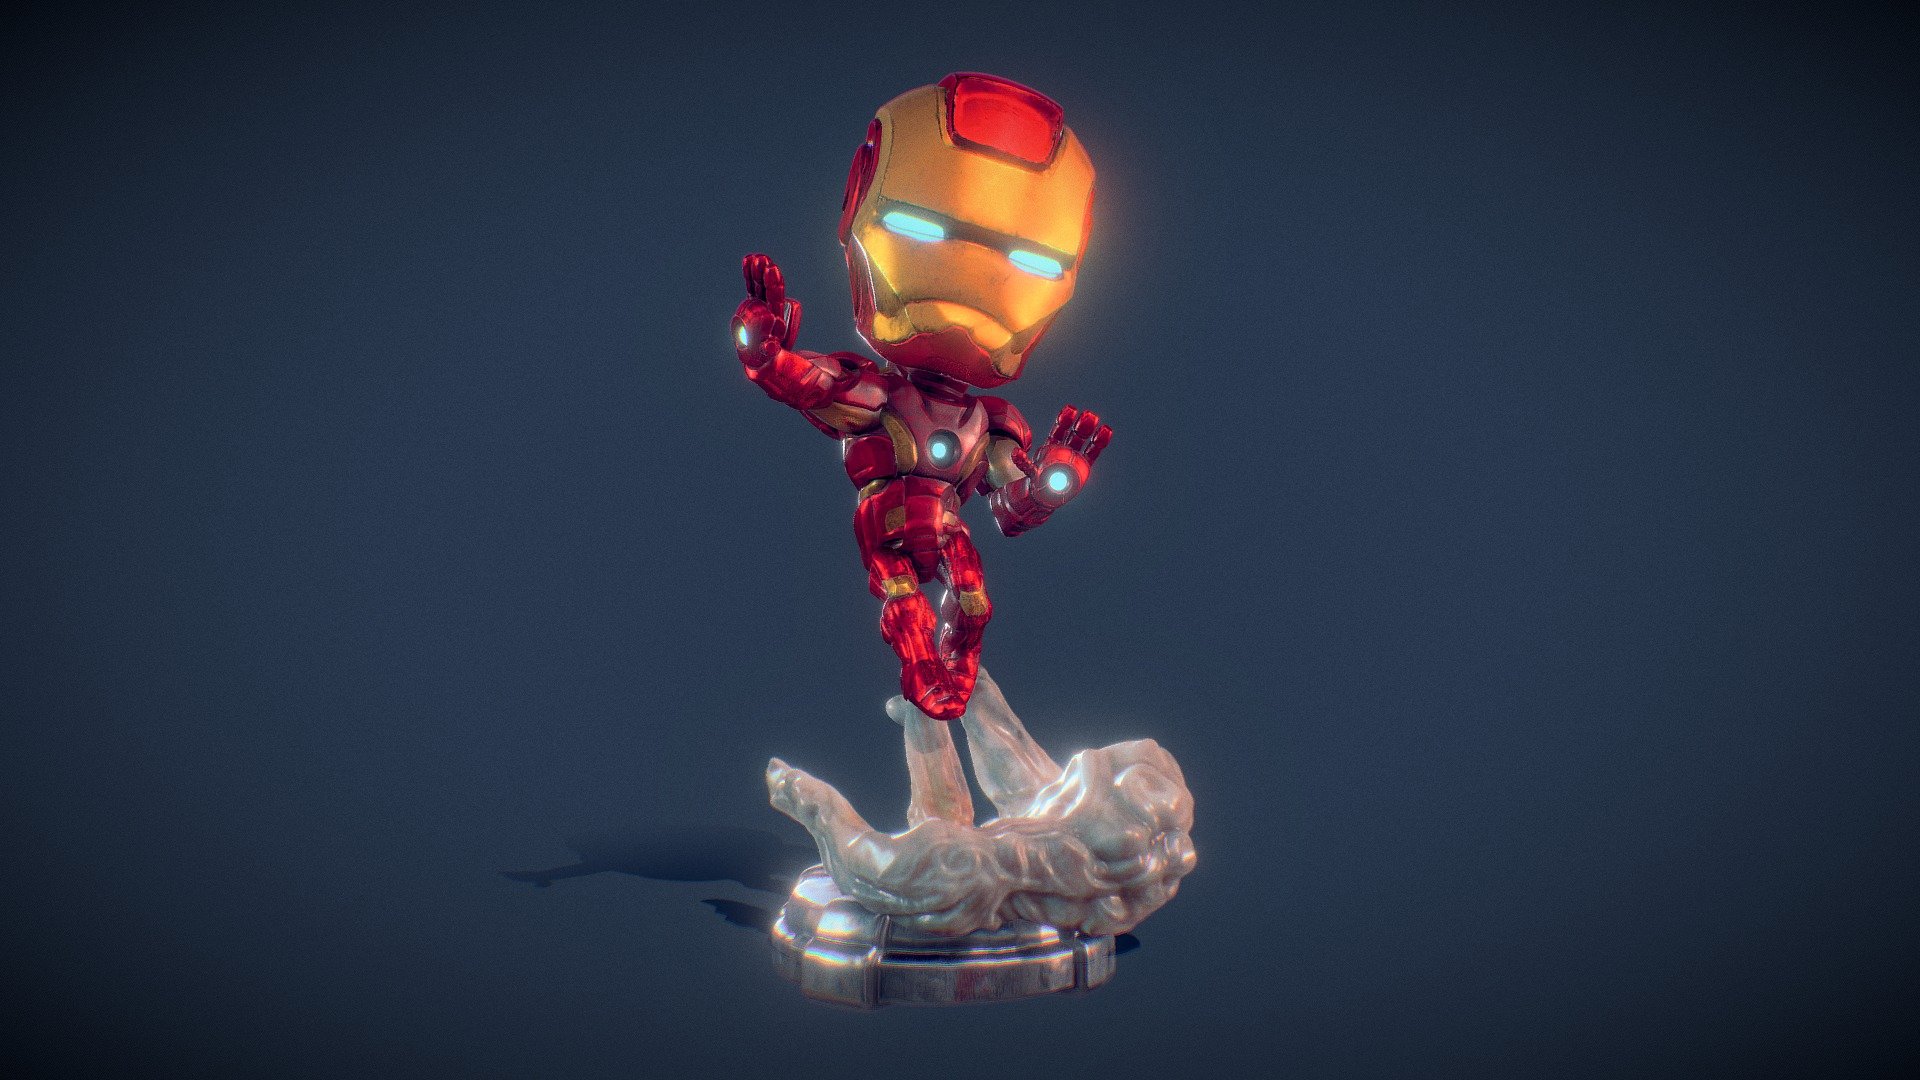 Chibi Iron Man - 3D model by Indrasmoroaji (@Indrasmoroaji) [ef5b8b0]